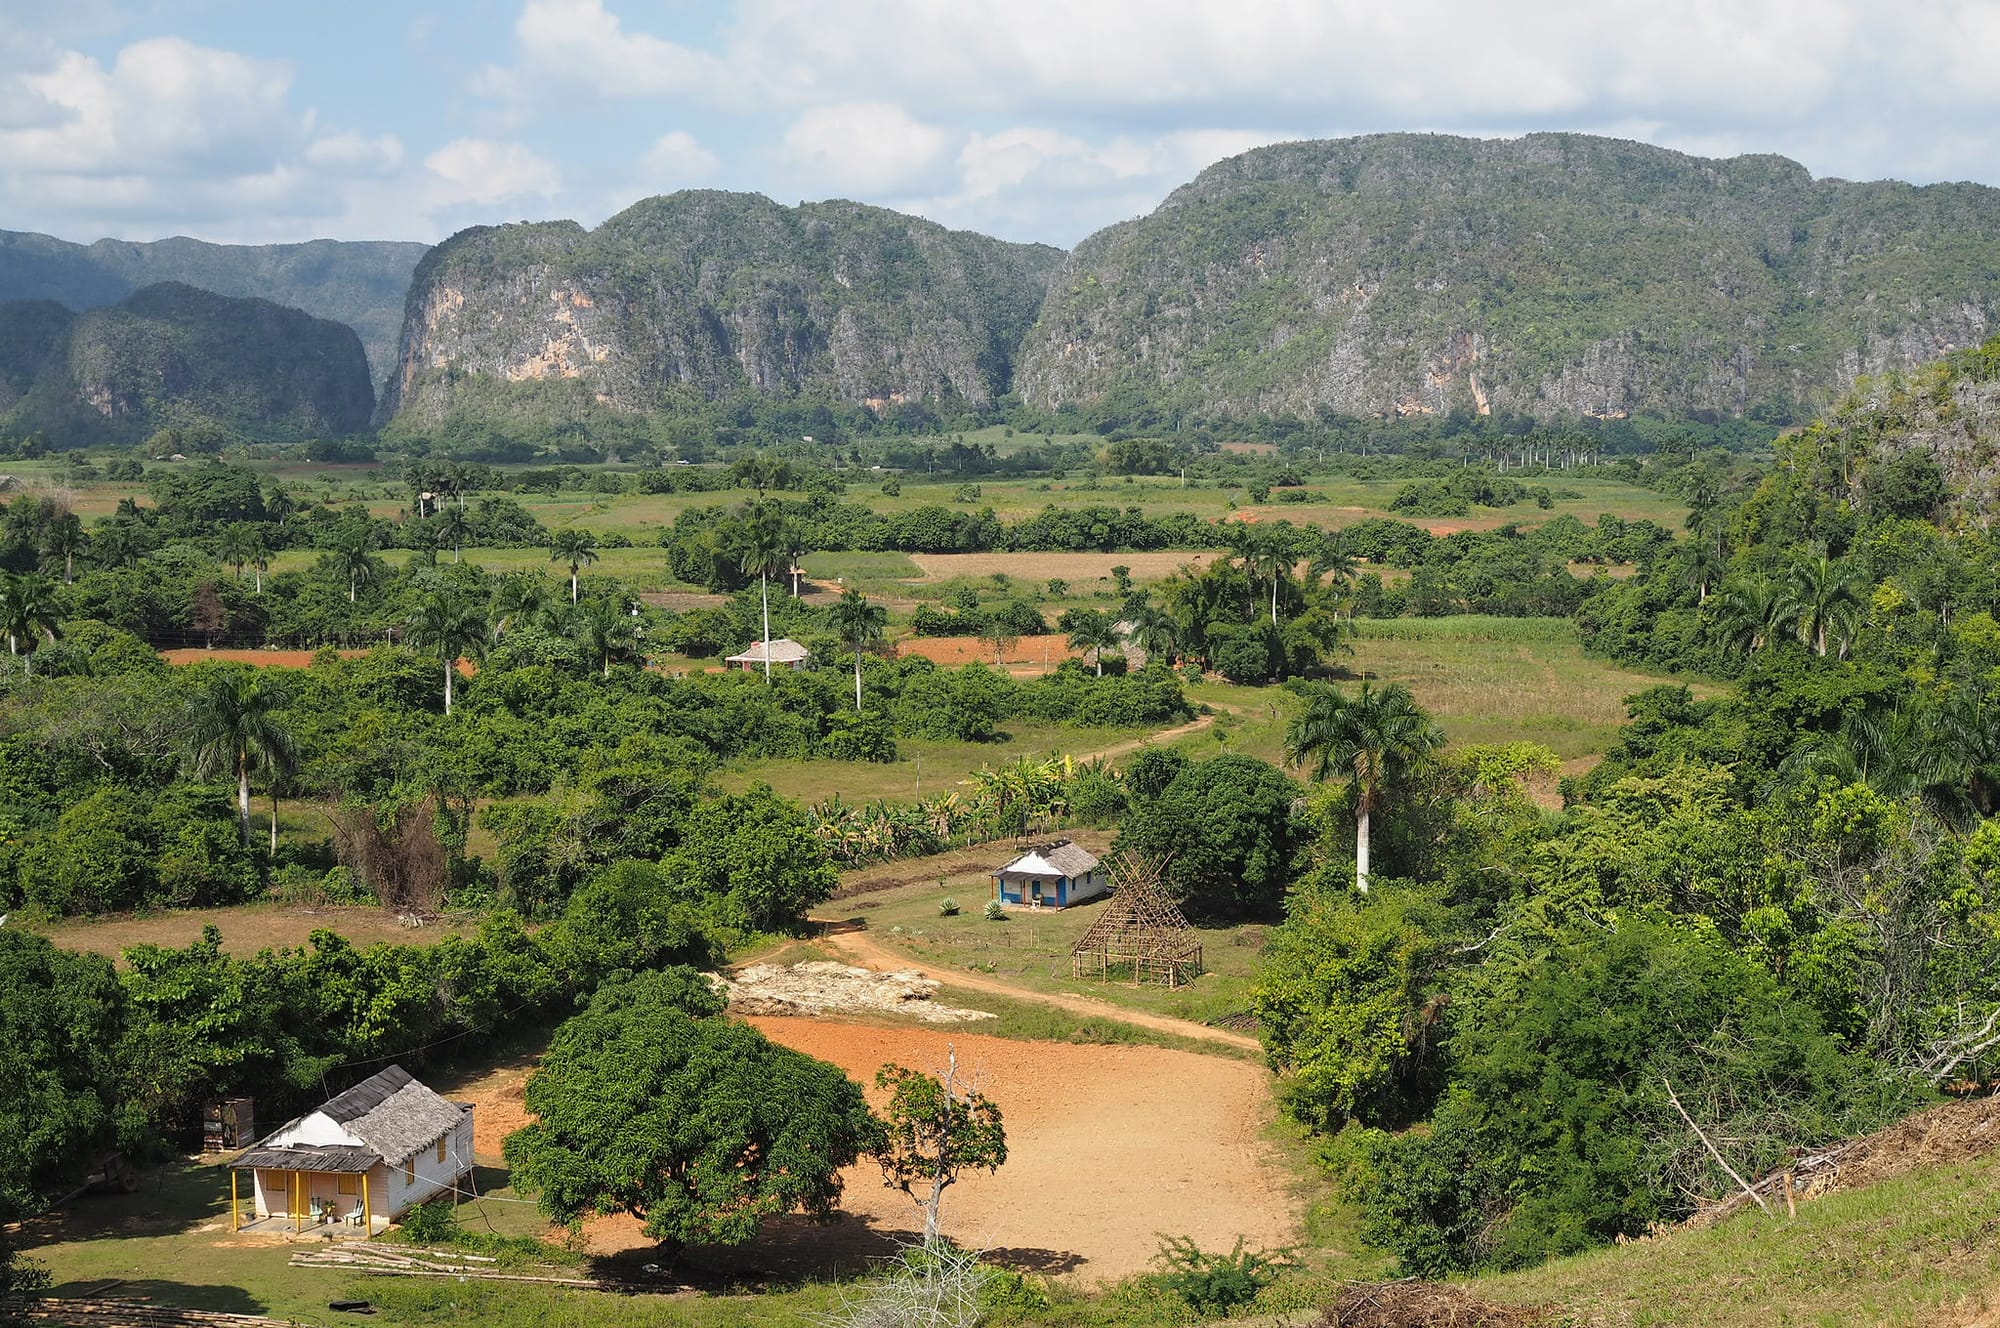 The Viñales Valley landscape in Cuba